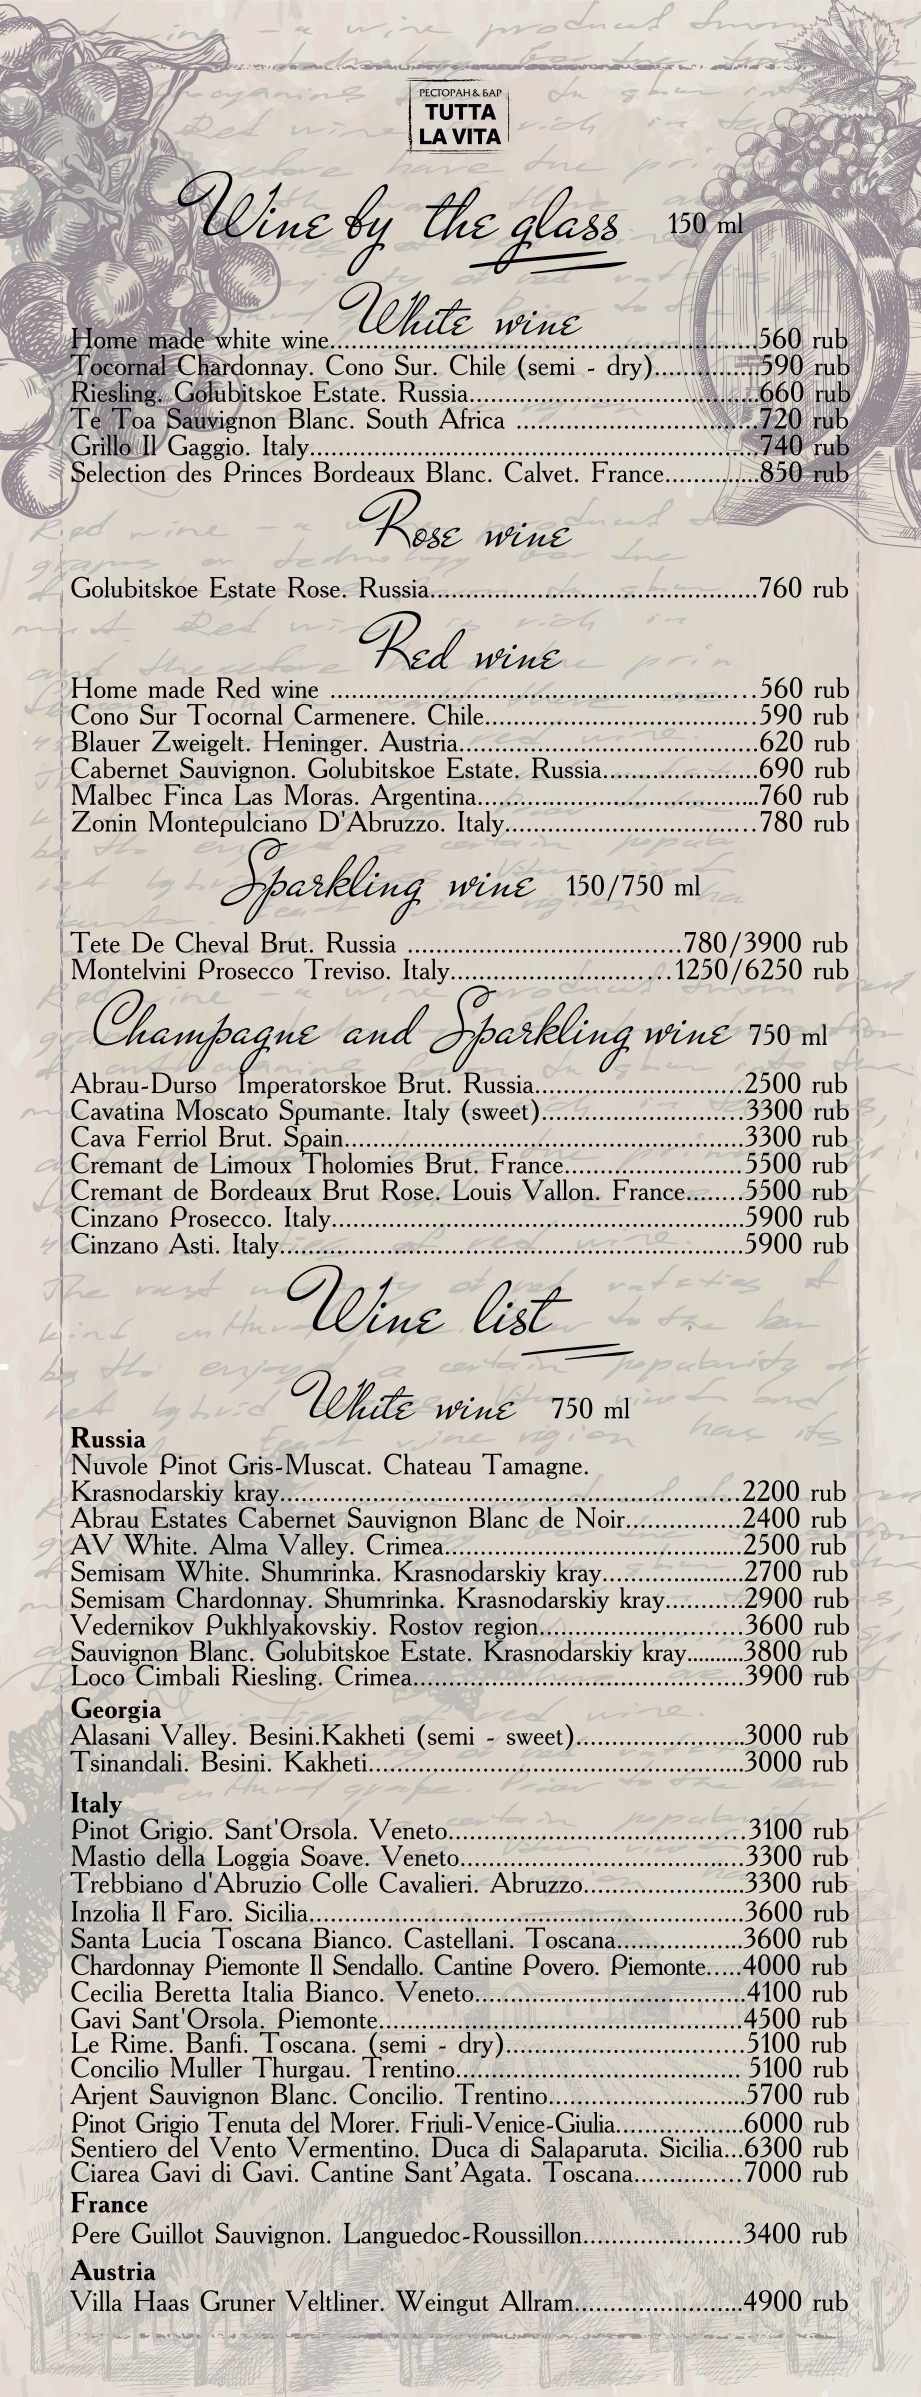 wine eng menu18 1 2